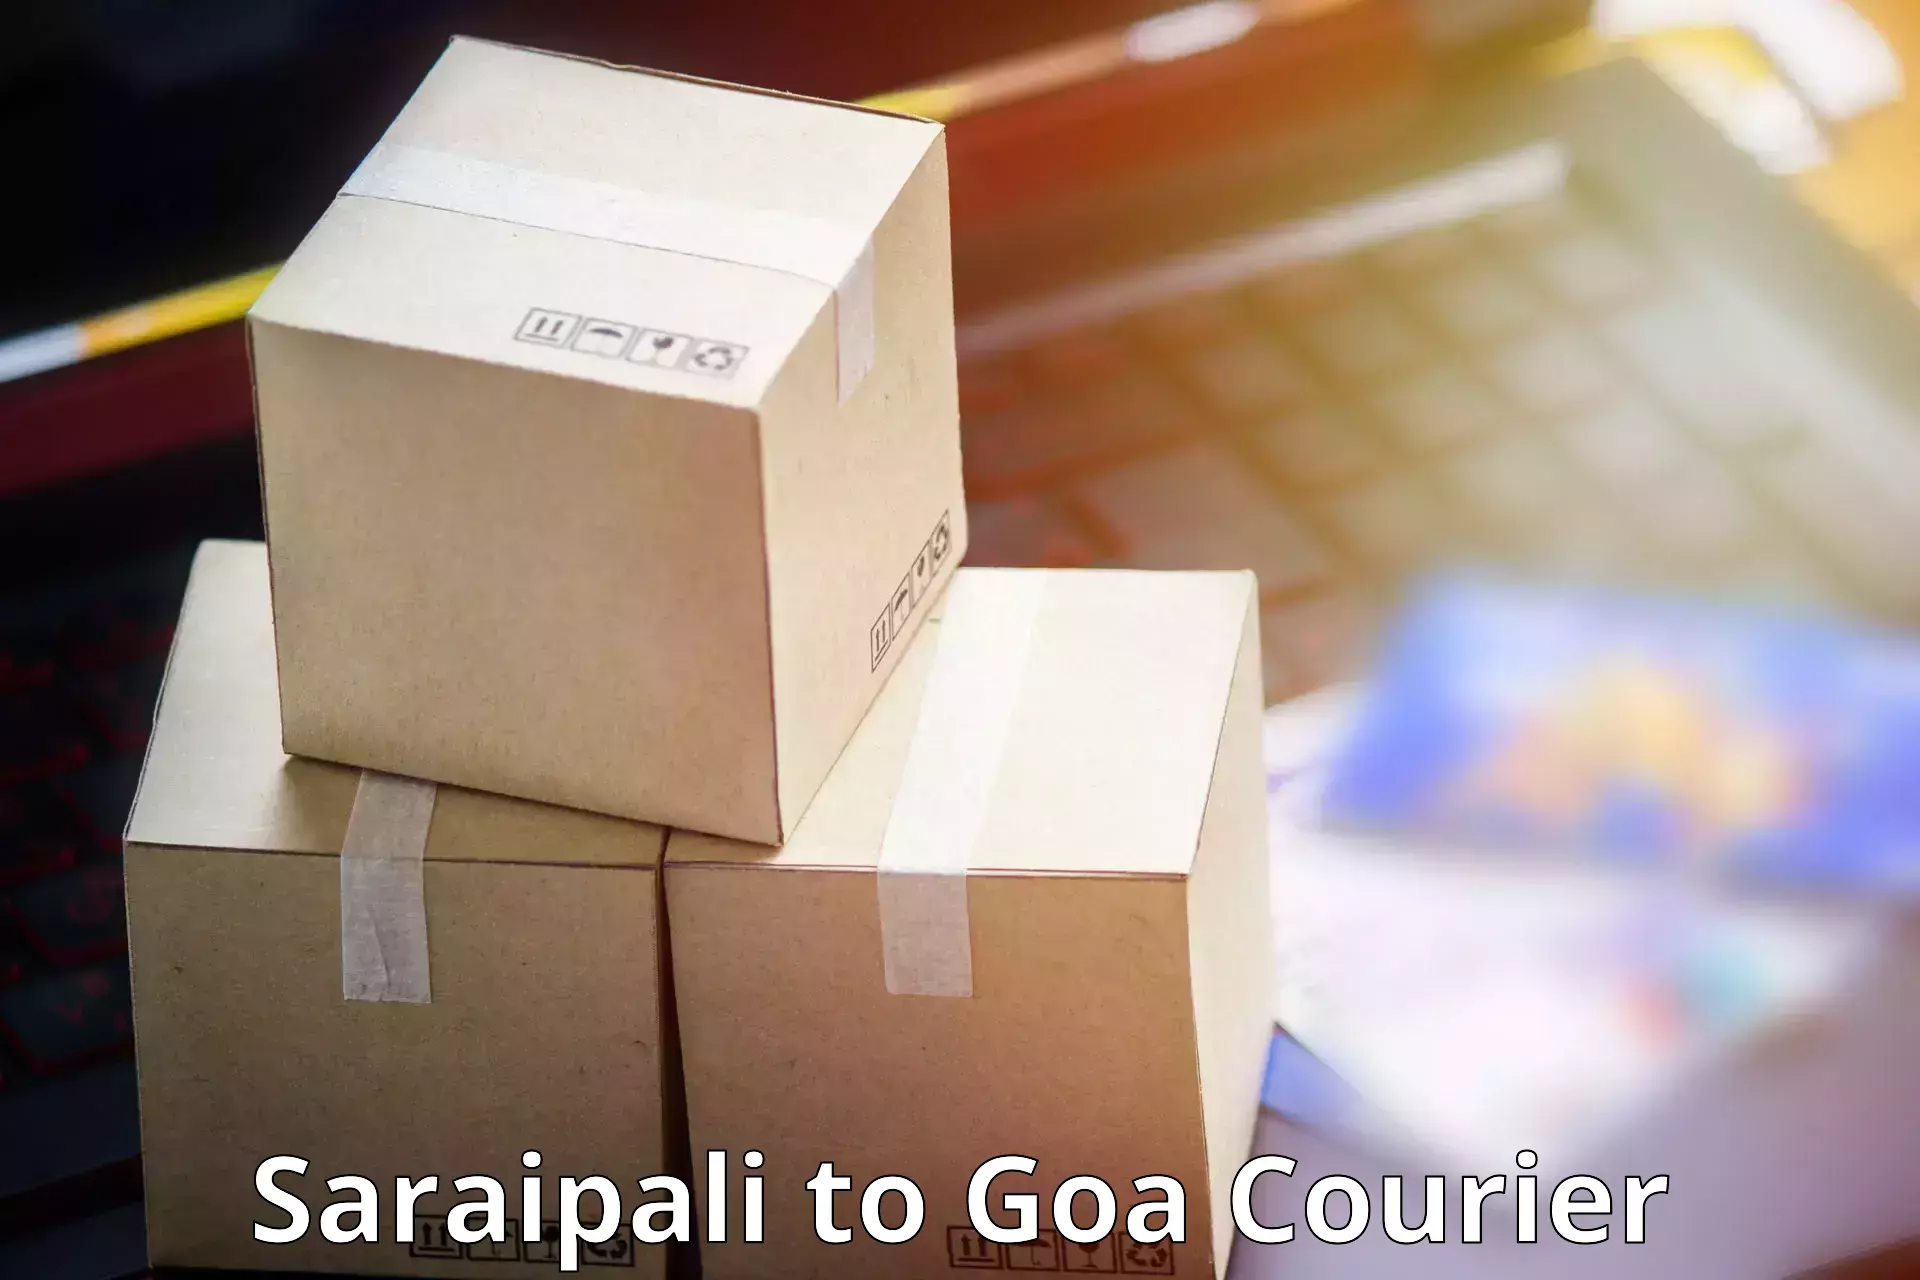 Courier service comparison Saraipali to Goa